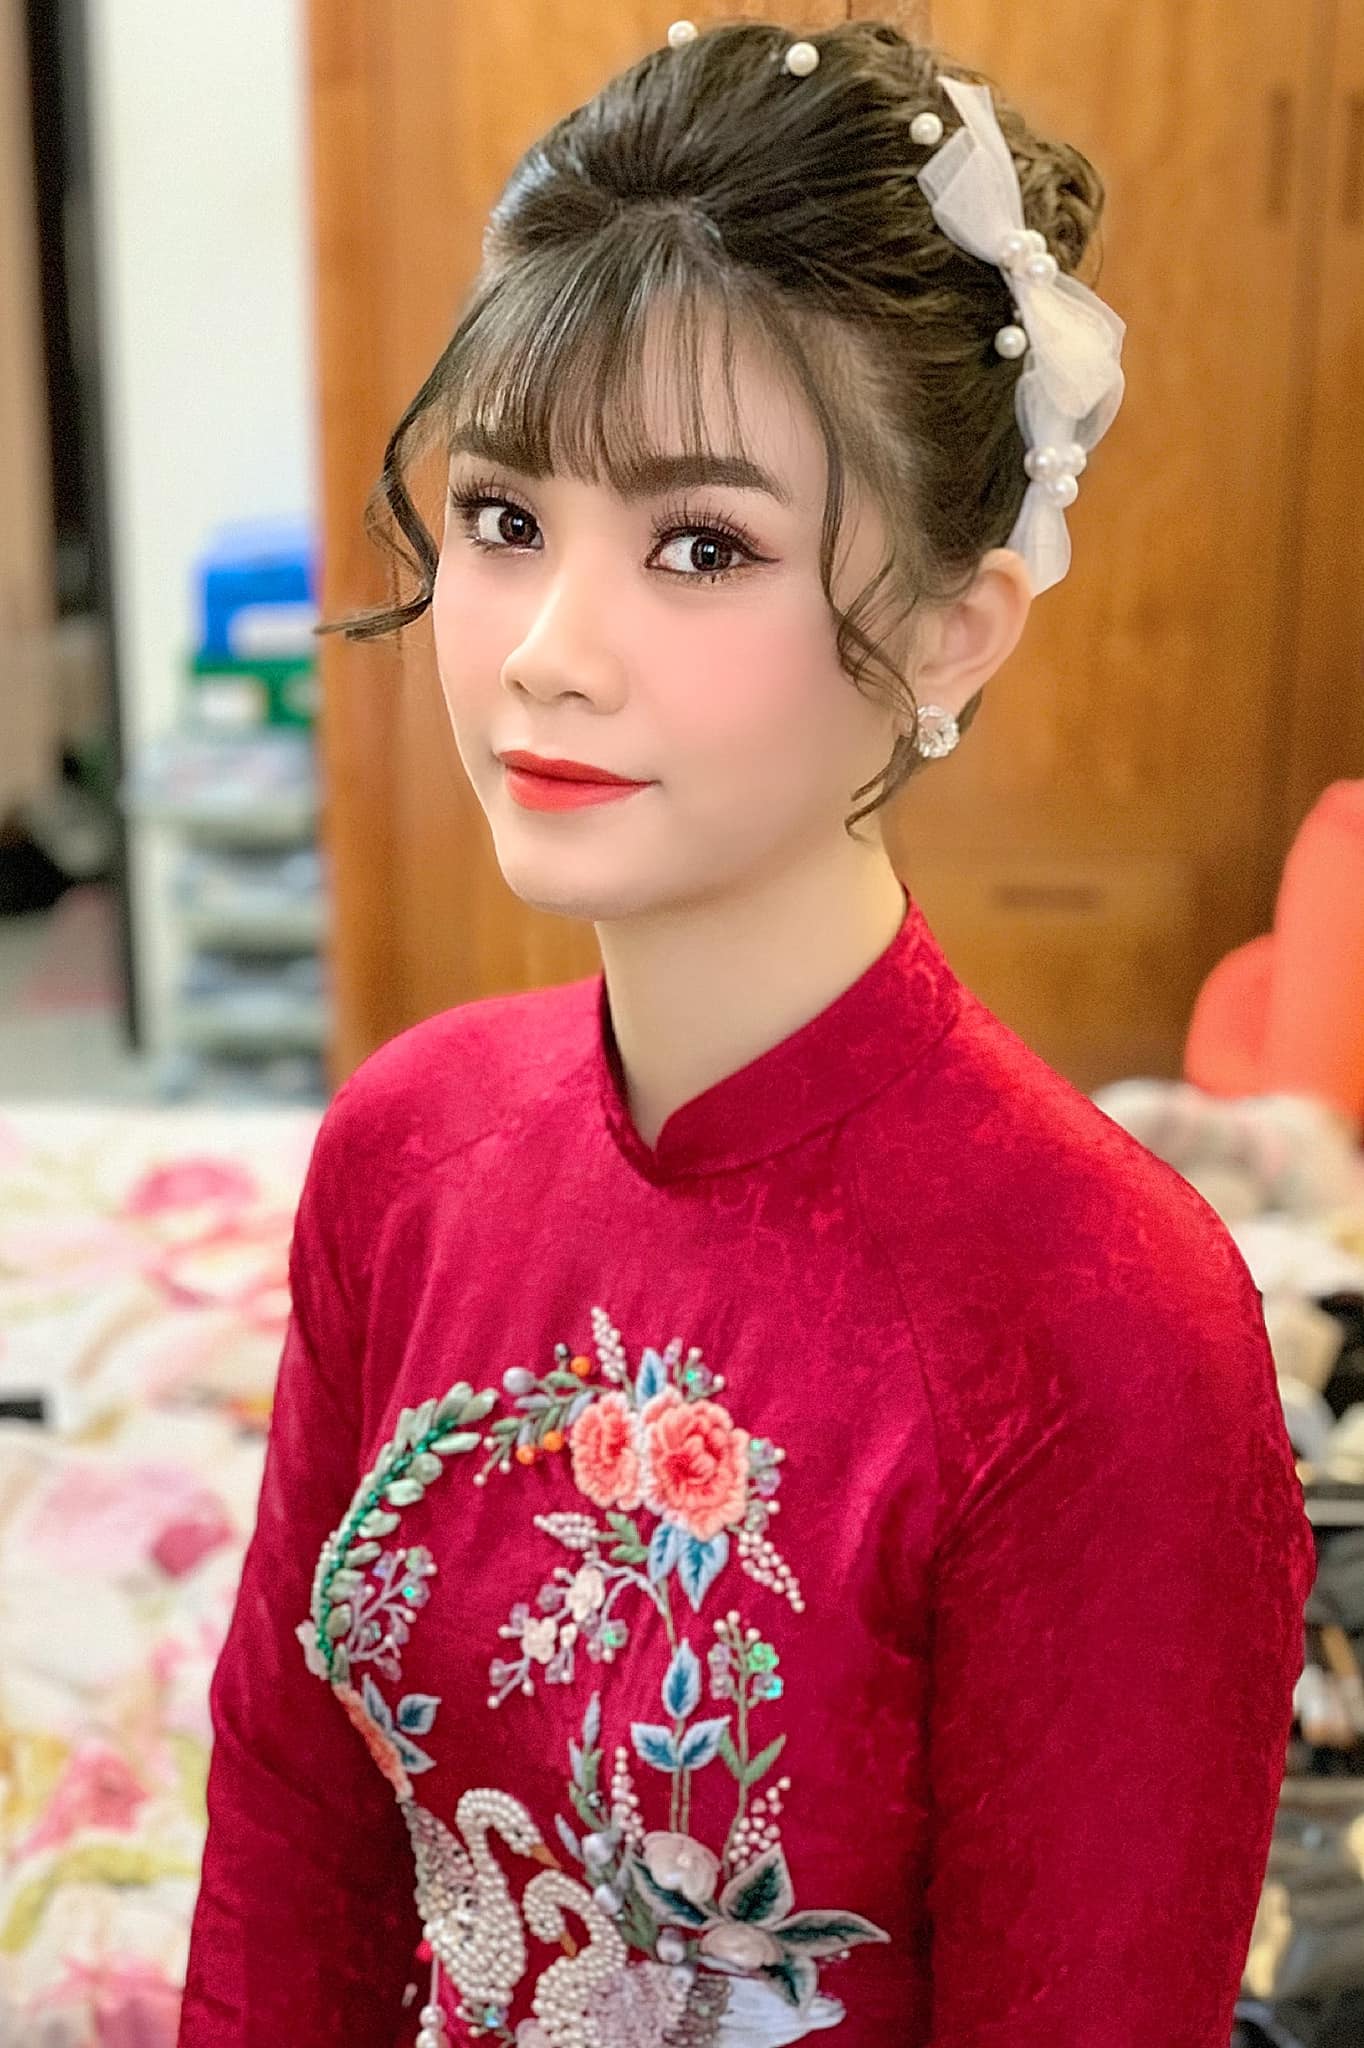 Top 7 tiệm trang điểm cô dâu đẹp nhất tại Hà Nội -  Linh Killdy Makeup Store (Nguyễn Thuỳ Linh)